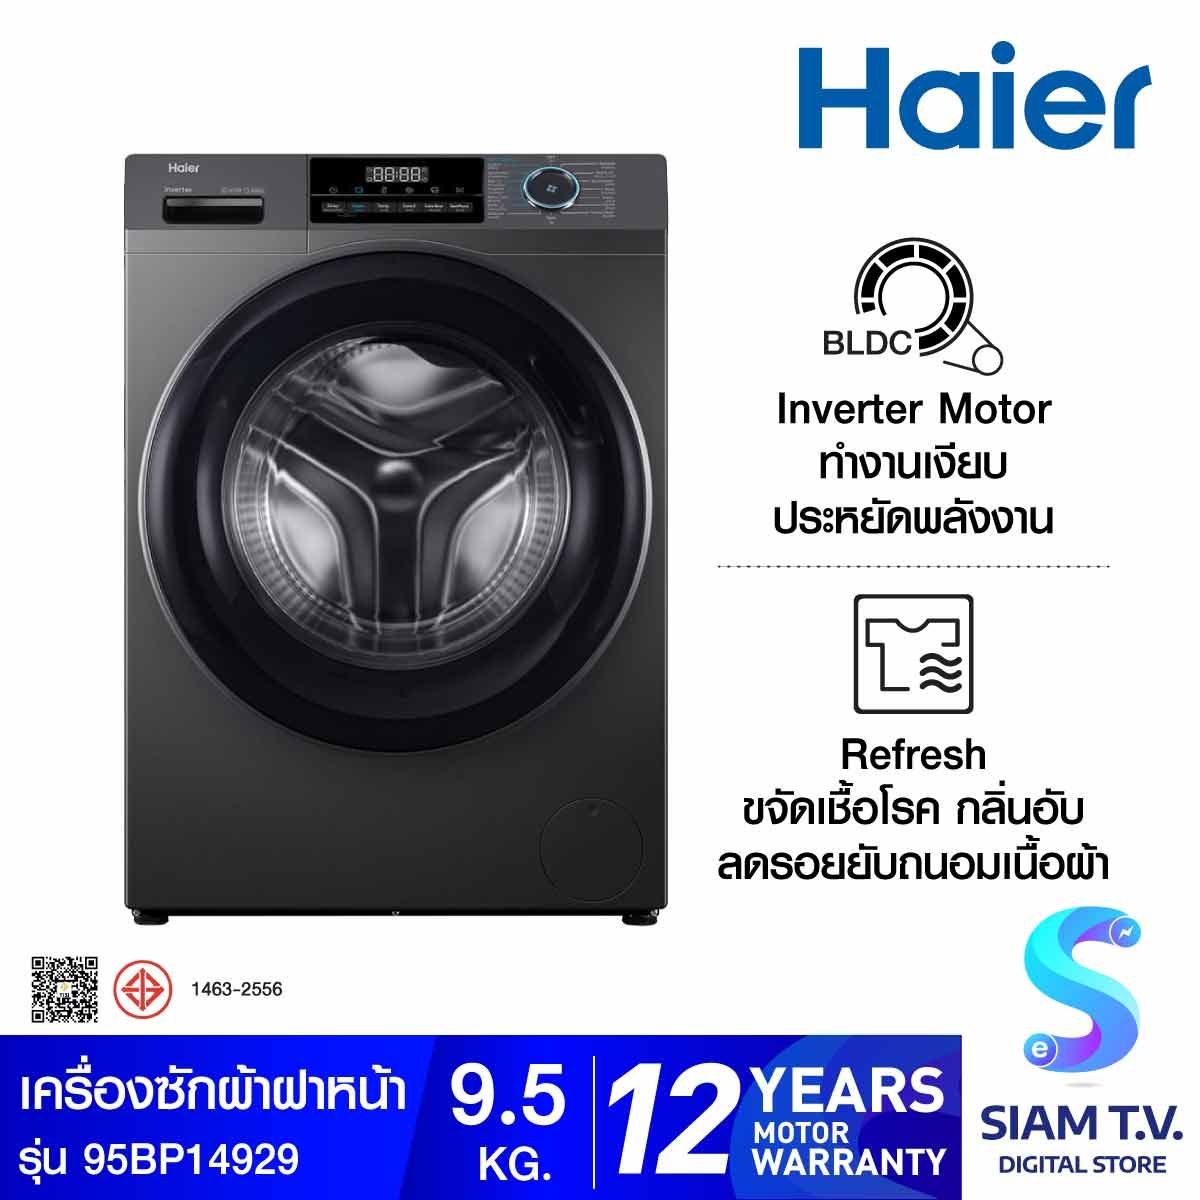 HAIER เครื่องซักผ้าฝาหน้า 9.5Kg. สีดำ รุ่นHW95-BP14929AS6